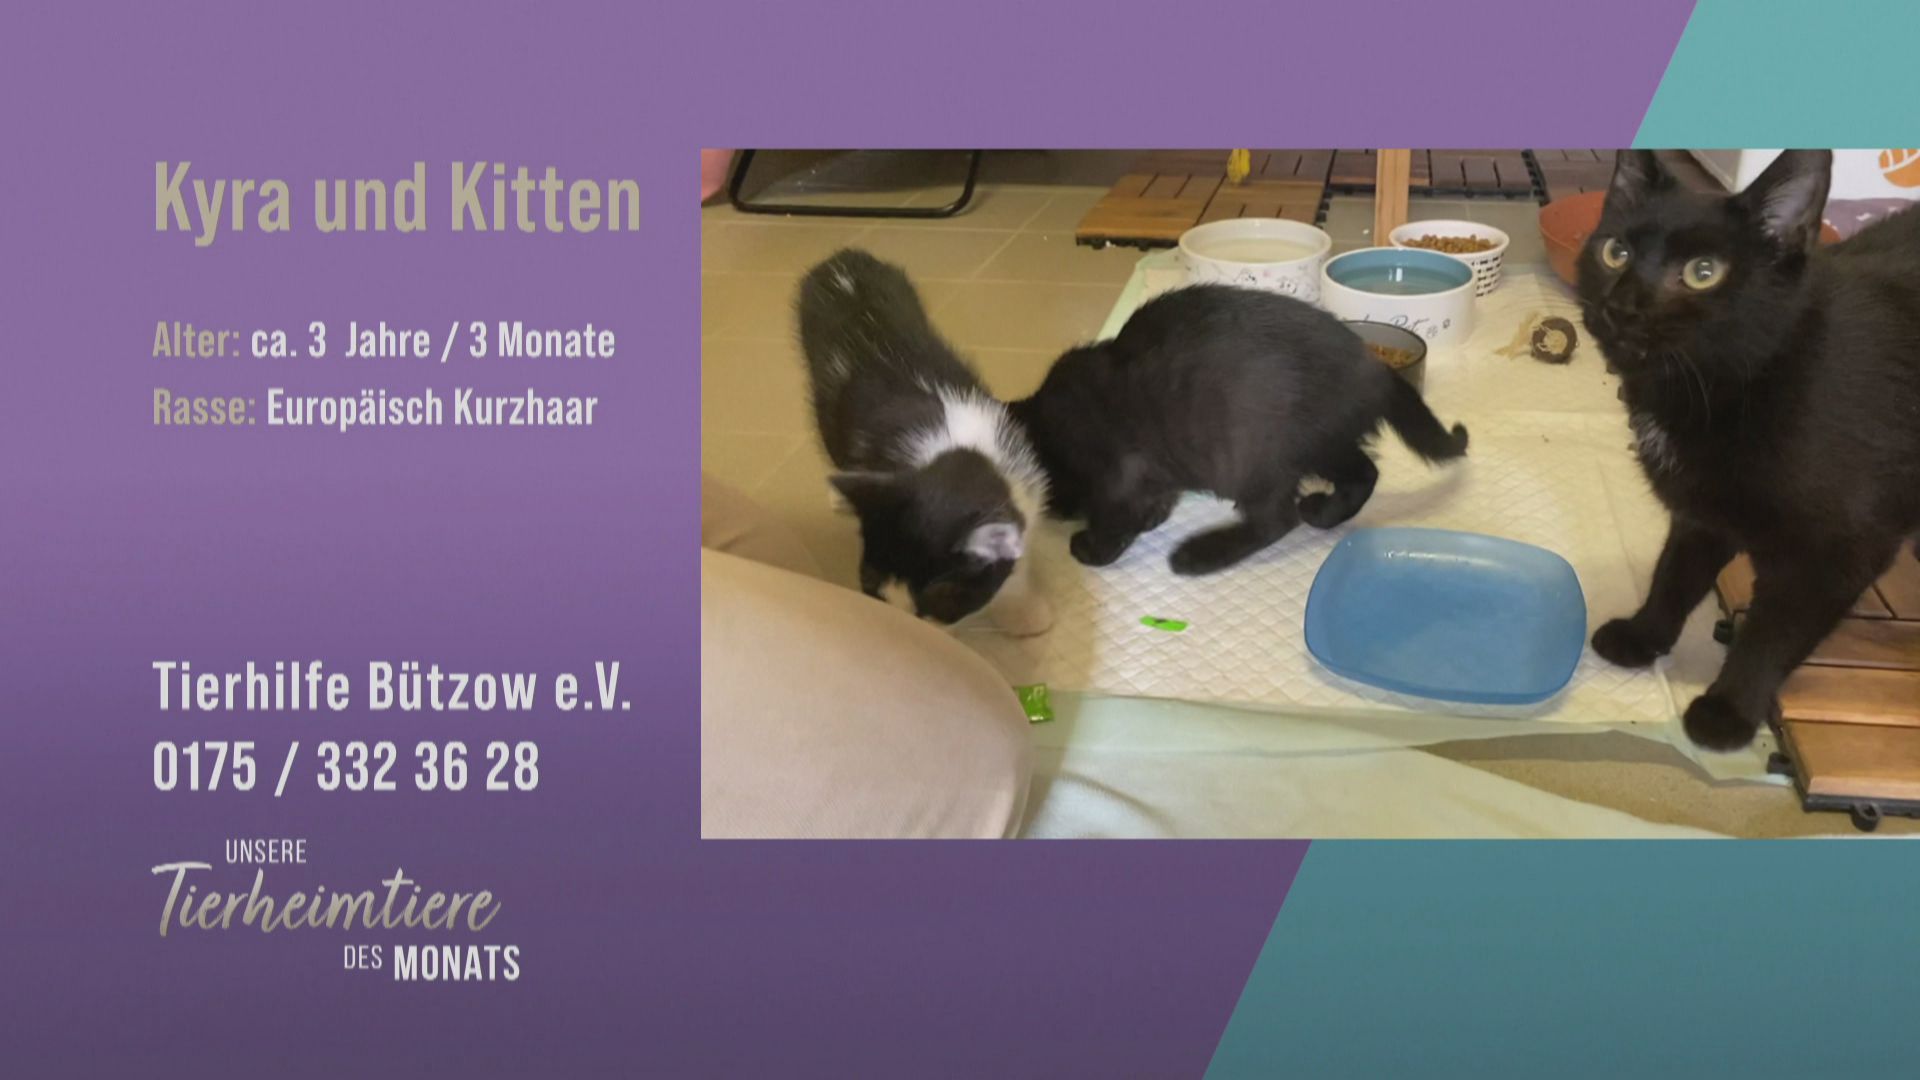 Kyra und ihre Katzen-Babys suchen ein neues Zuhause